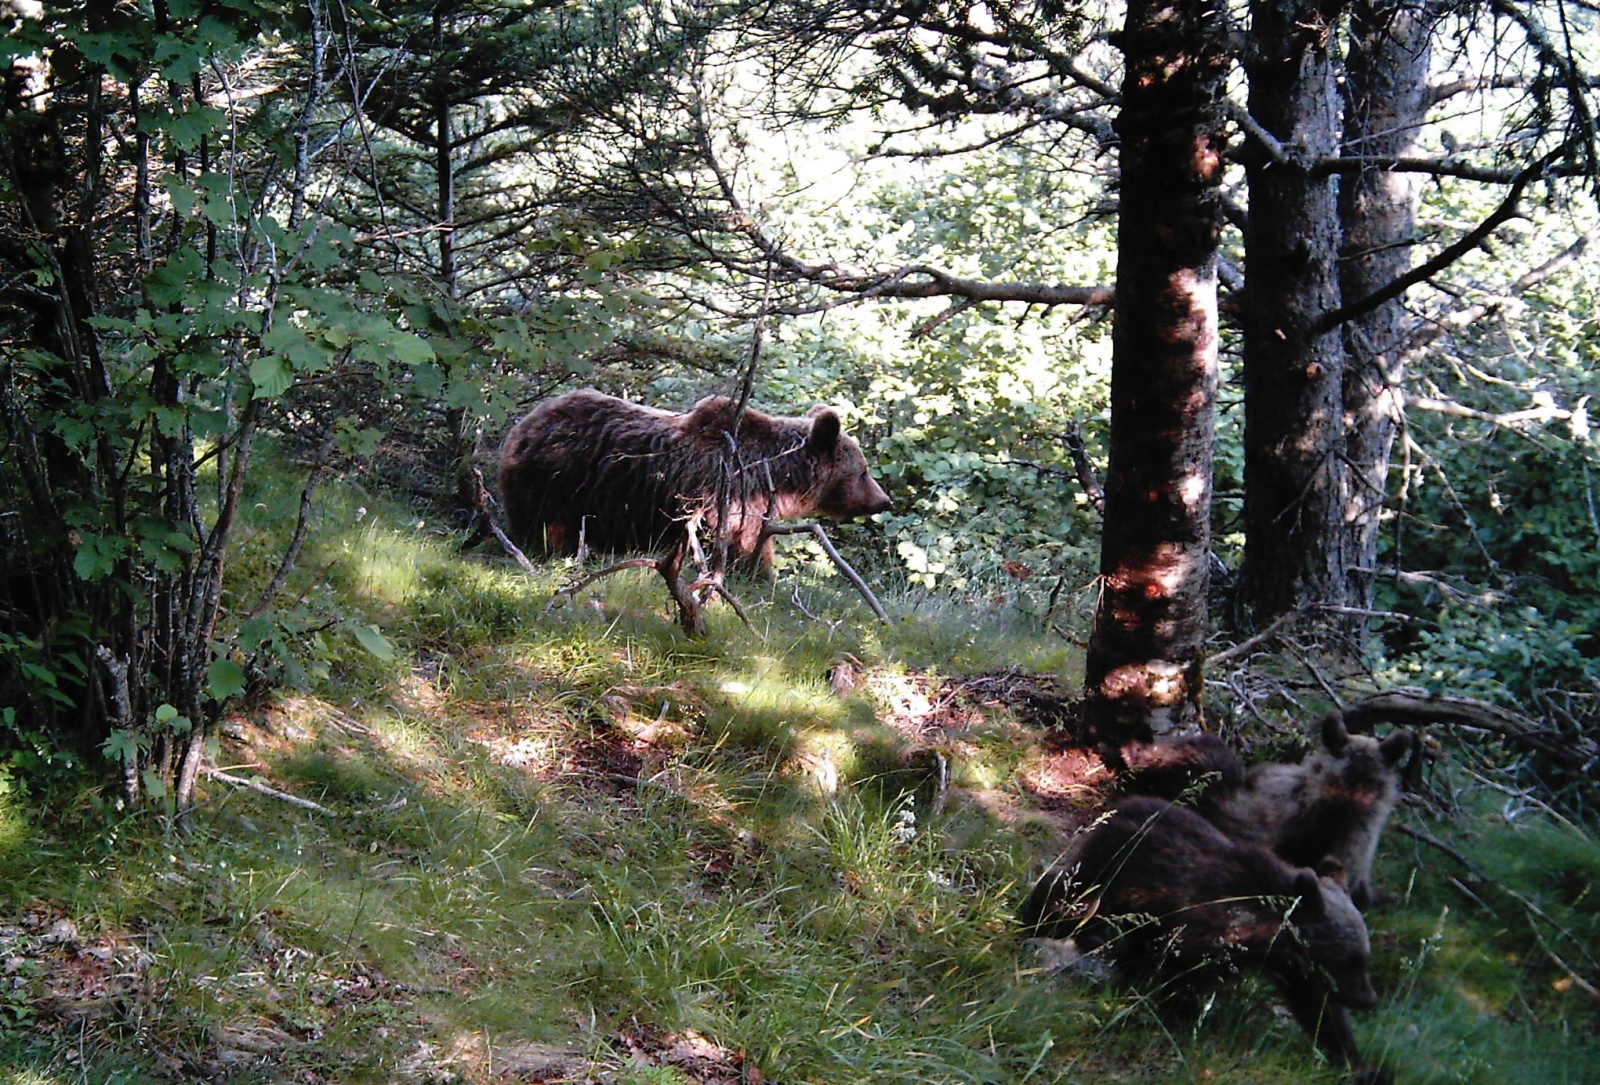 La reunió de seguiment transfronterer de l'ós bru en detecta 31 al 2014